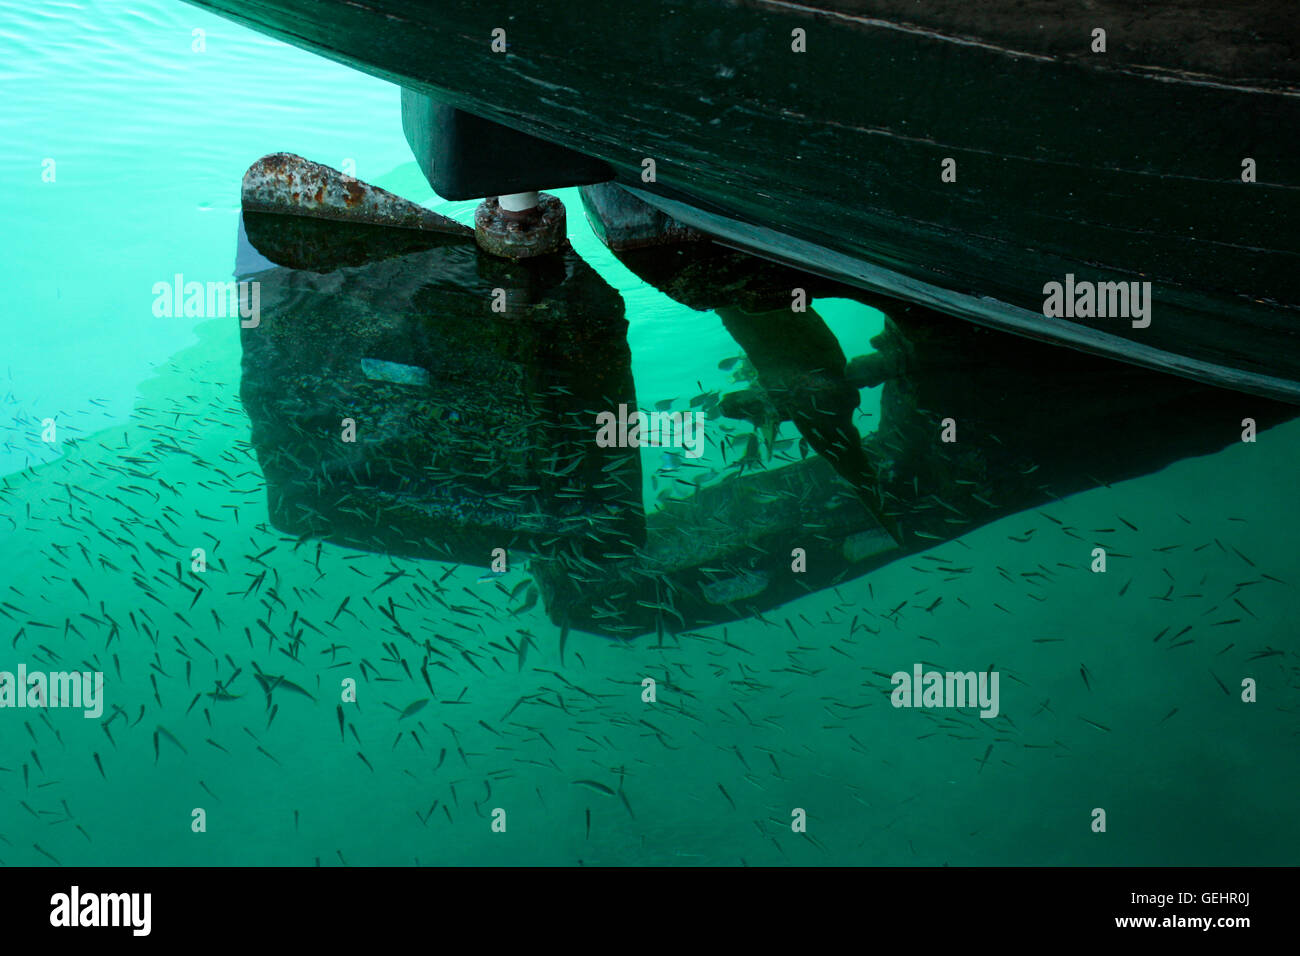 Hélice de bateau et peu de poisson haut-fond dans l'eau turquoise Banque D'Images